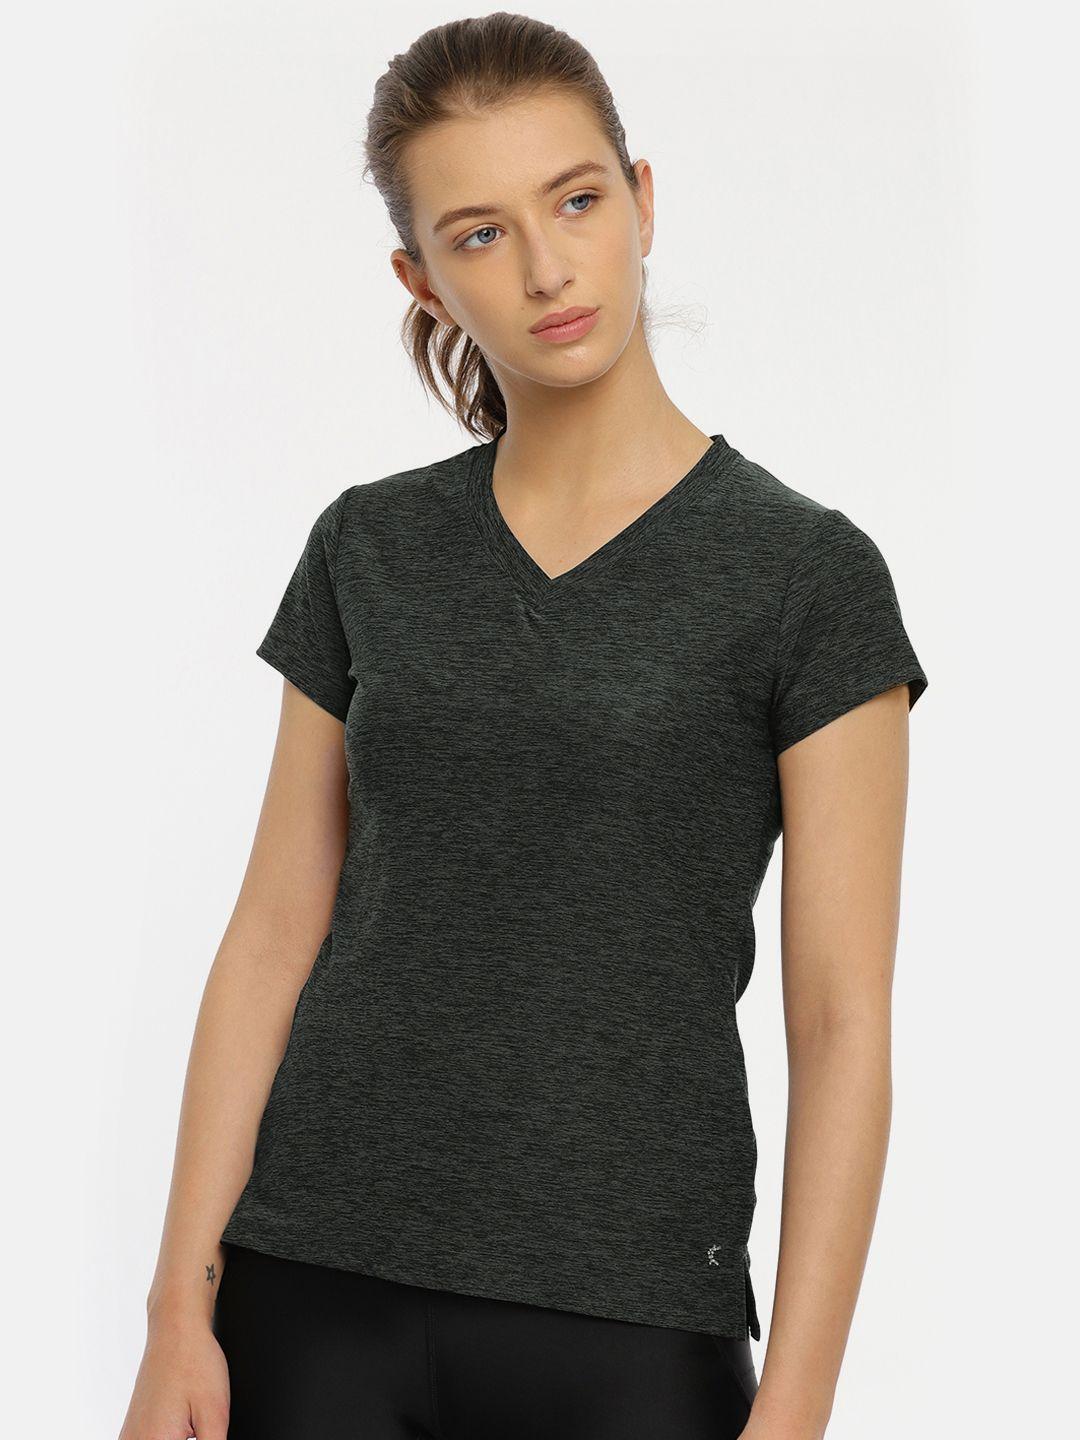 kanvin-women-charcoal-black-self-design-v-neck-activewear-t-shirt